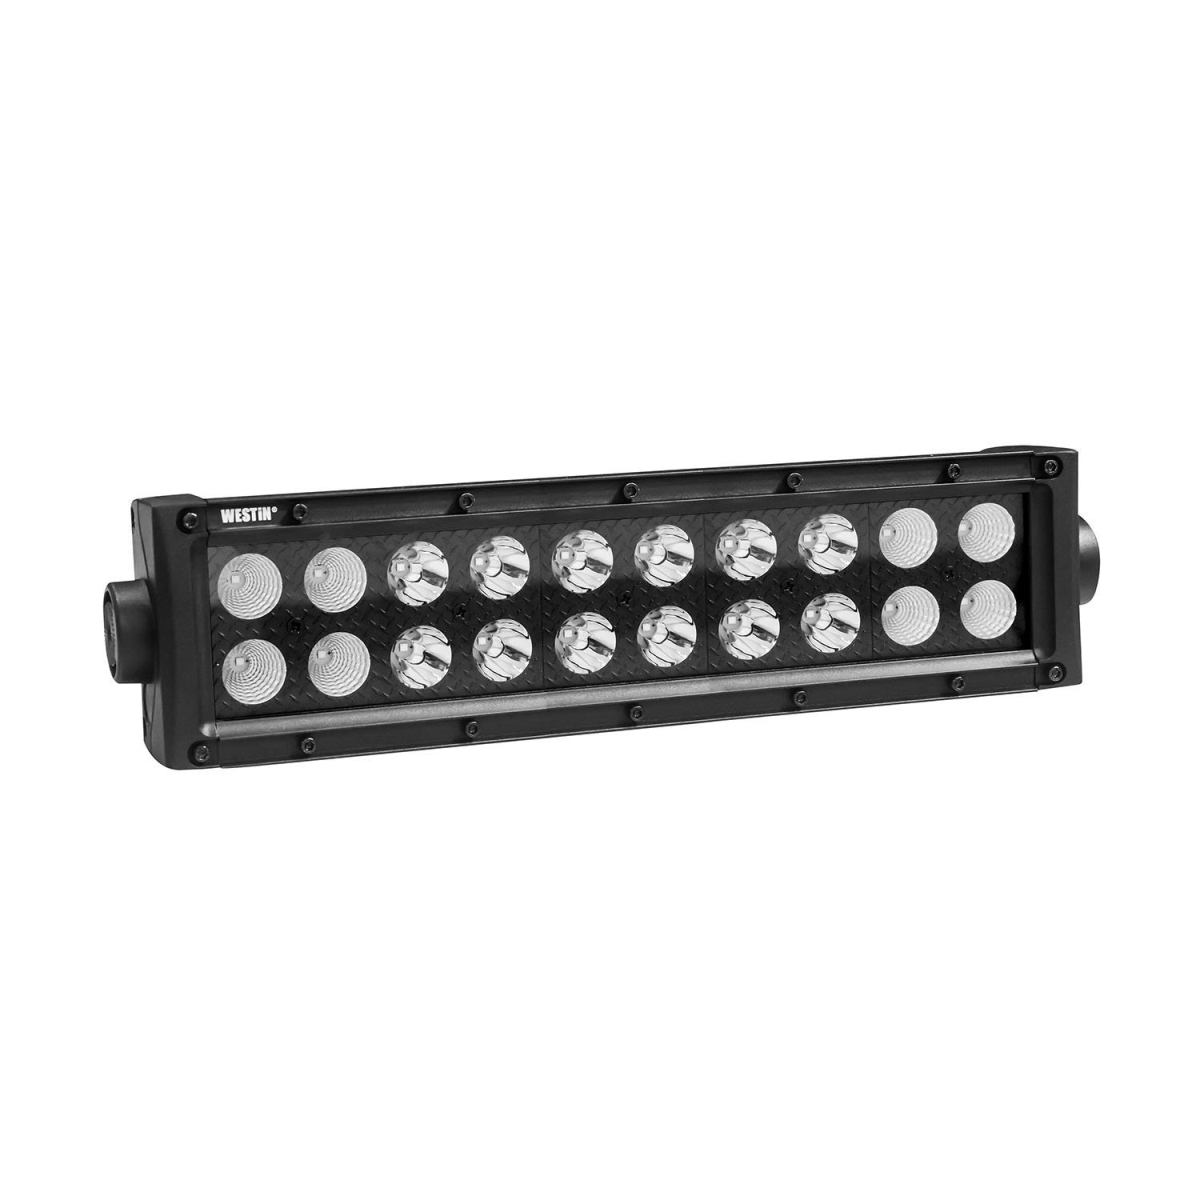 Wes09-12212-20c Stealth Led Light Bar - Black